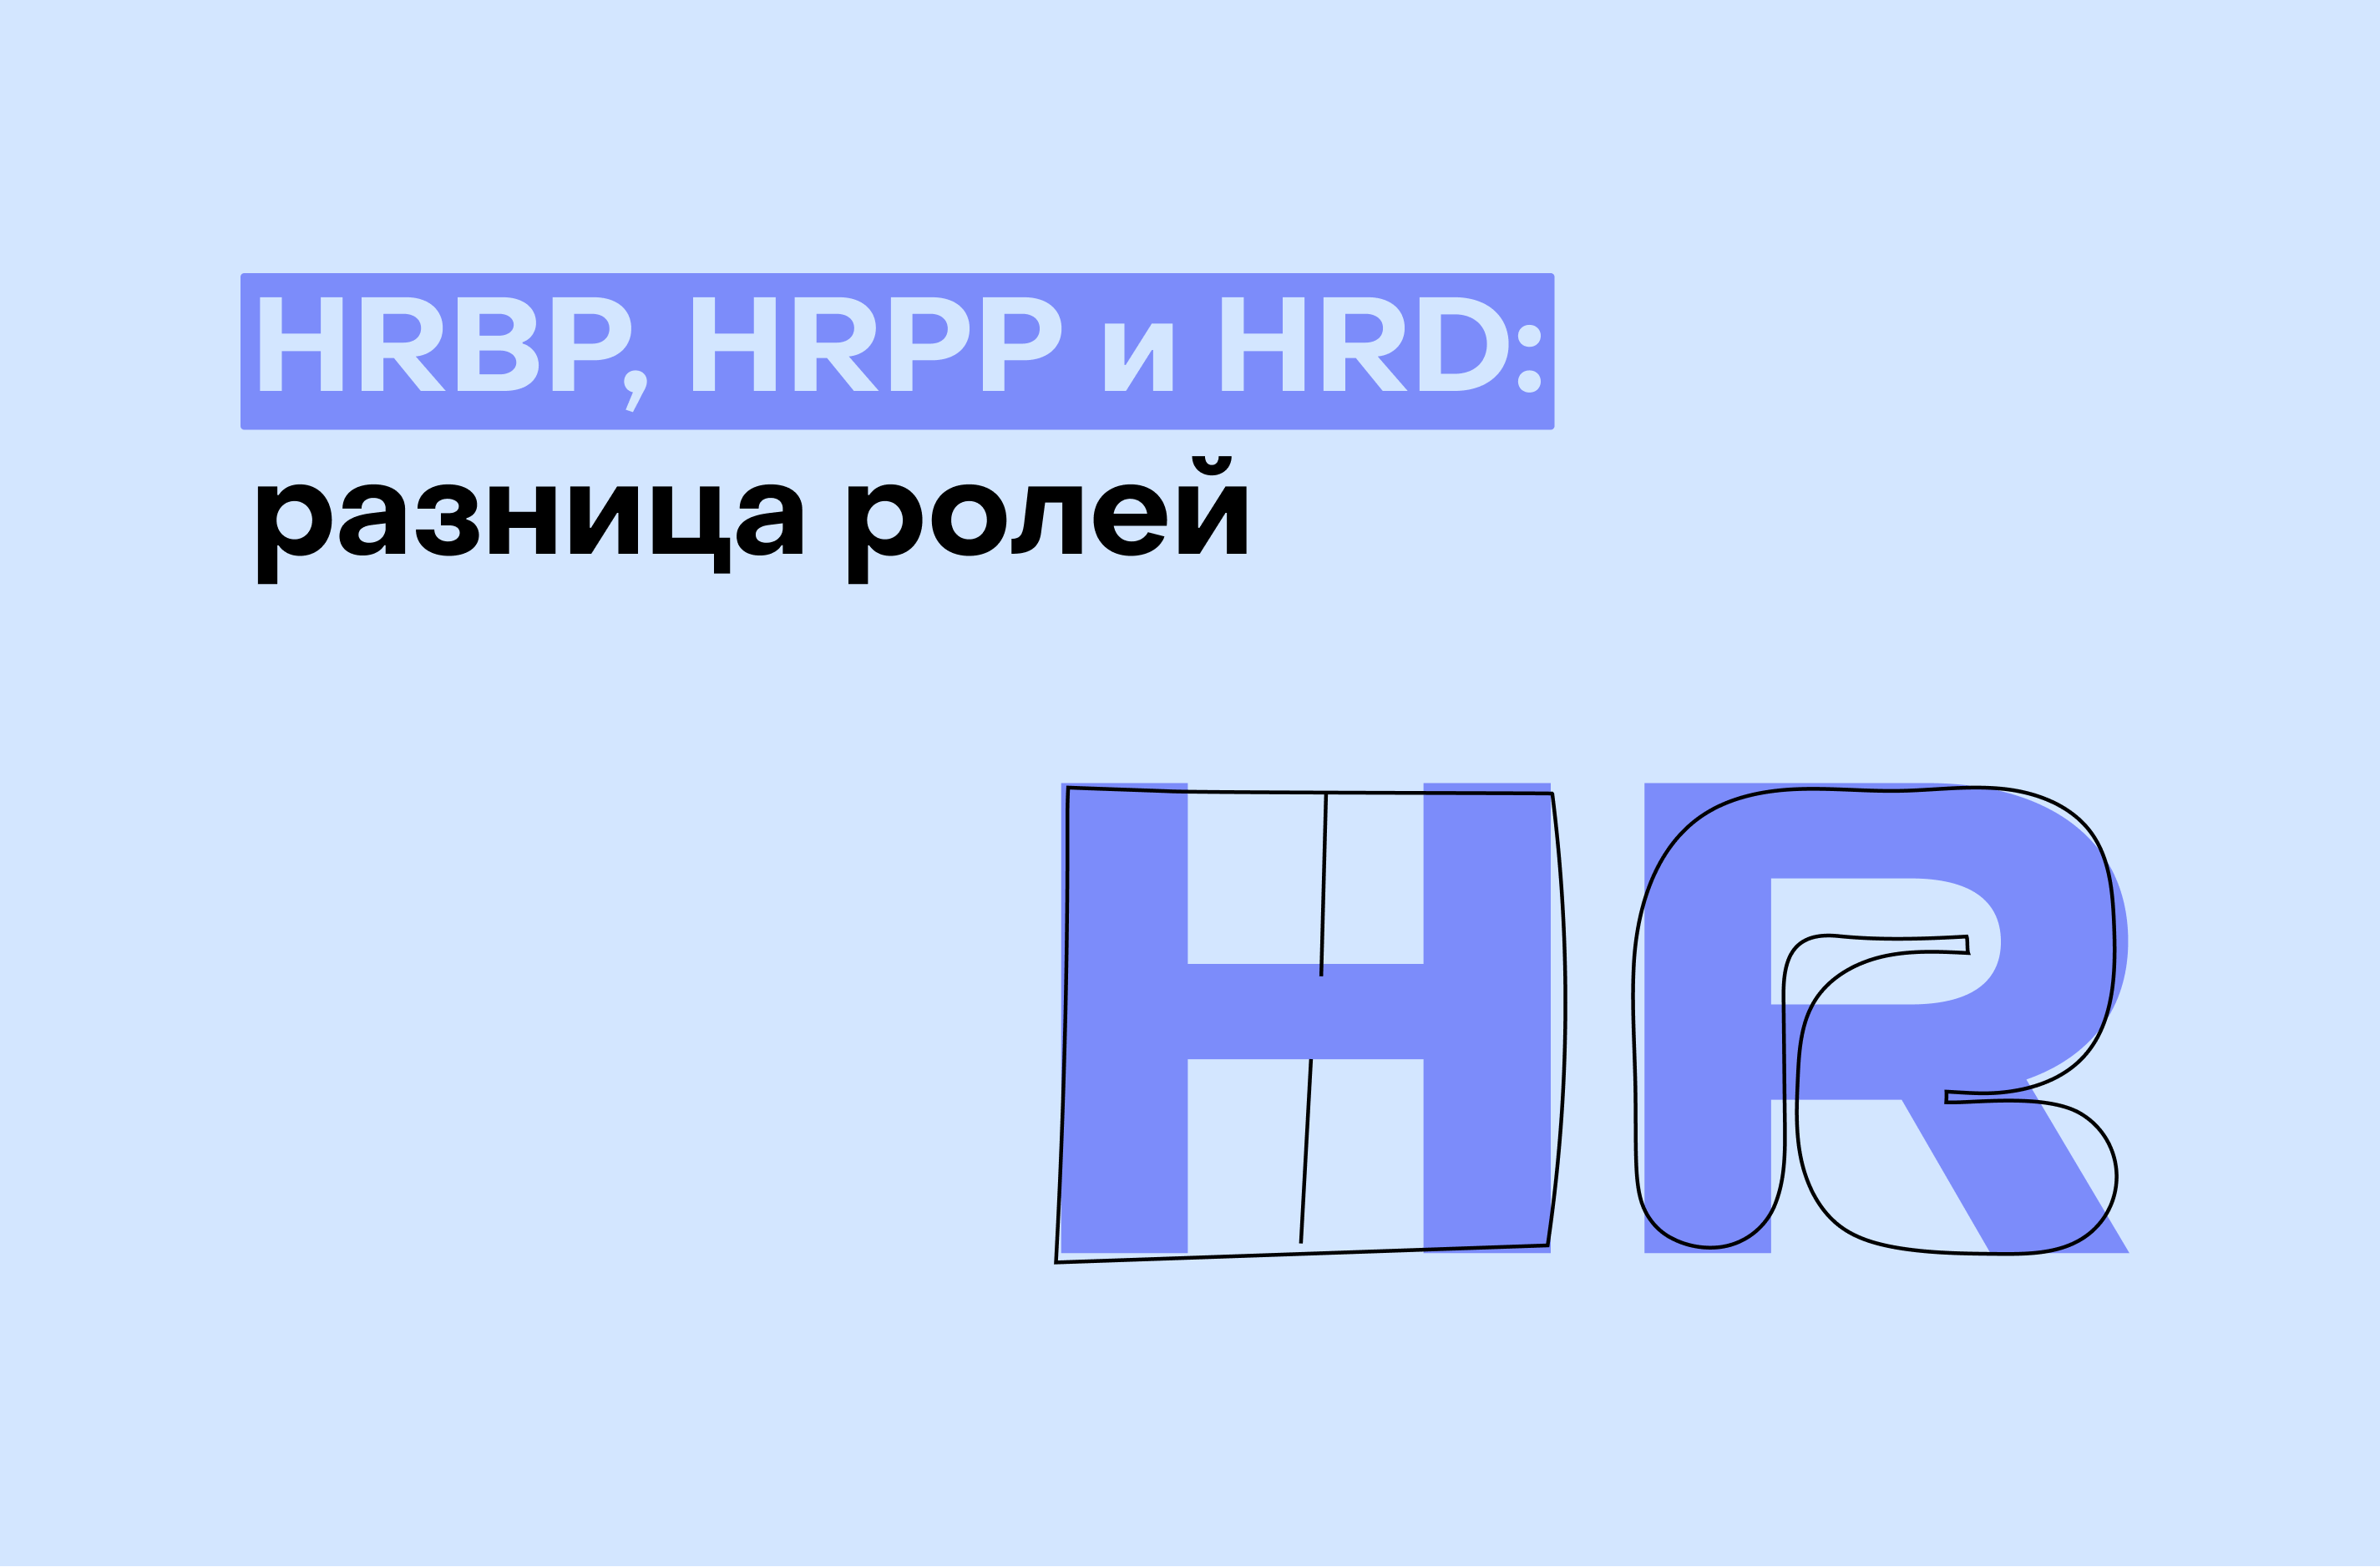 3 роли в эйчар: чем занимаются HRBP, HRPP и HRD?